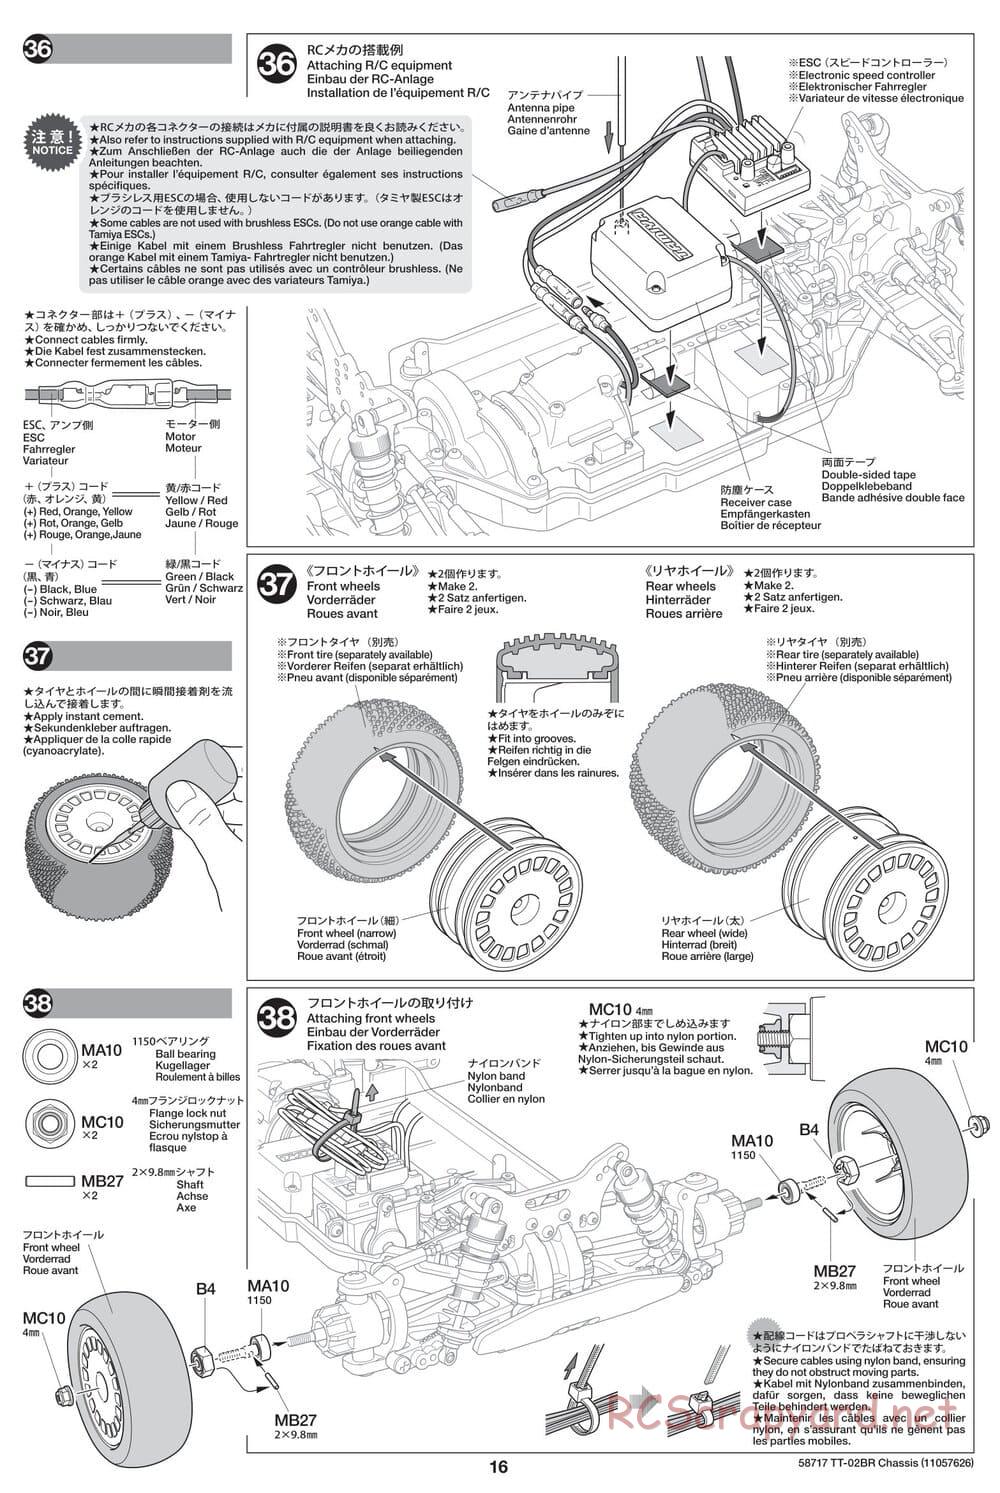 Tamiya - TT-02BR Chassis - Manual - Page 16